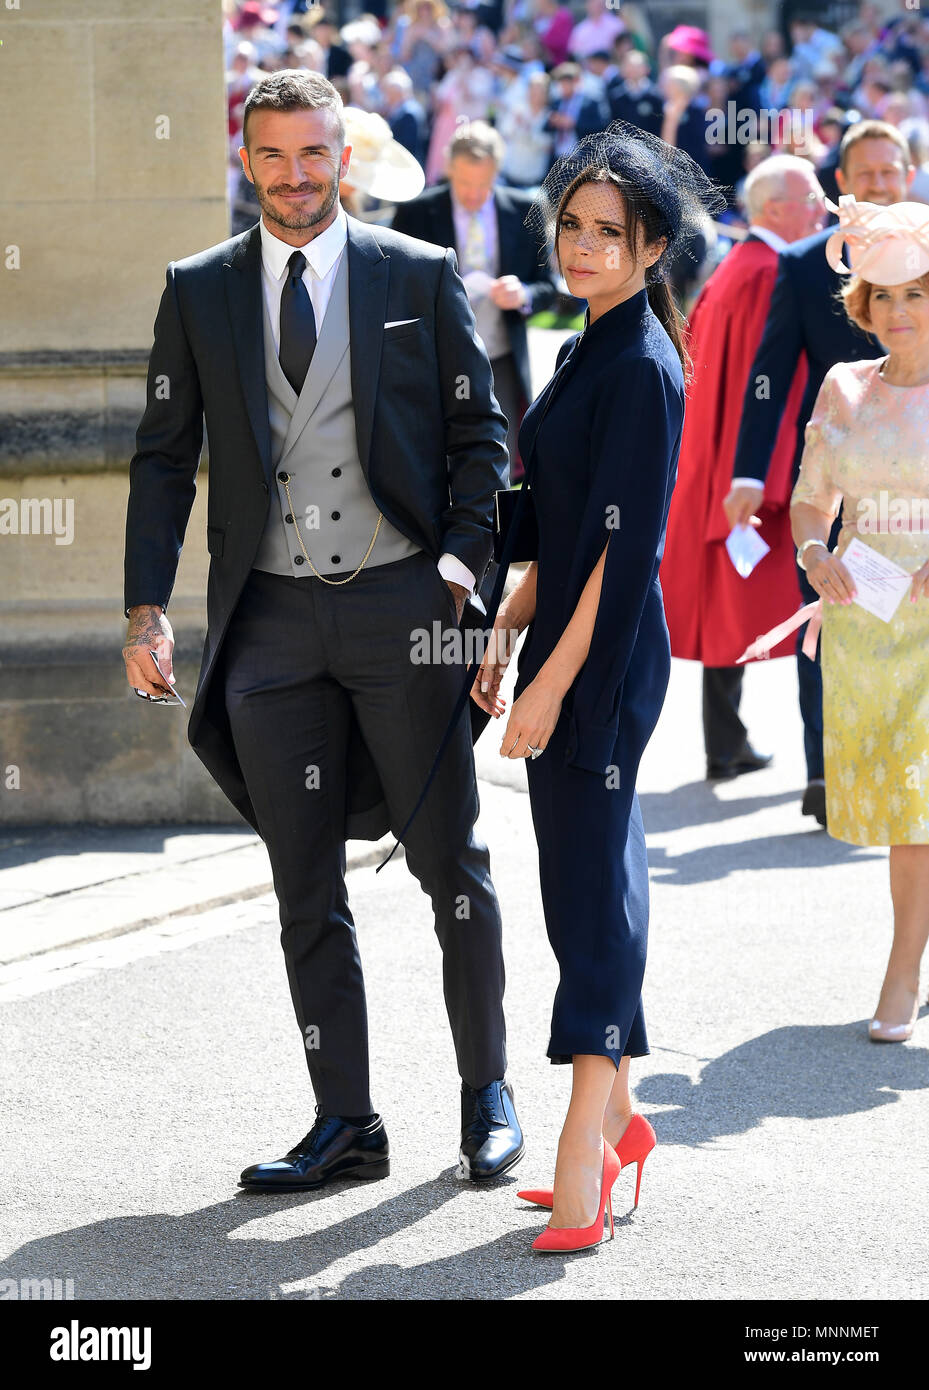 David und Victoria Beckham Ankunft in der St. George's Chapel auf Schloss Windsor für die Hochzeit von Meghan Markle und Prinz Harry. Stockfoto